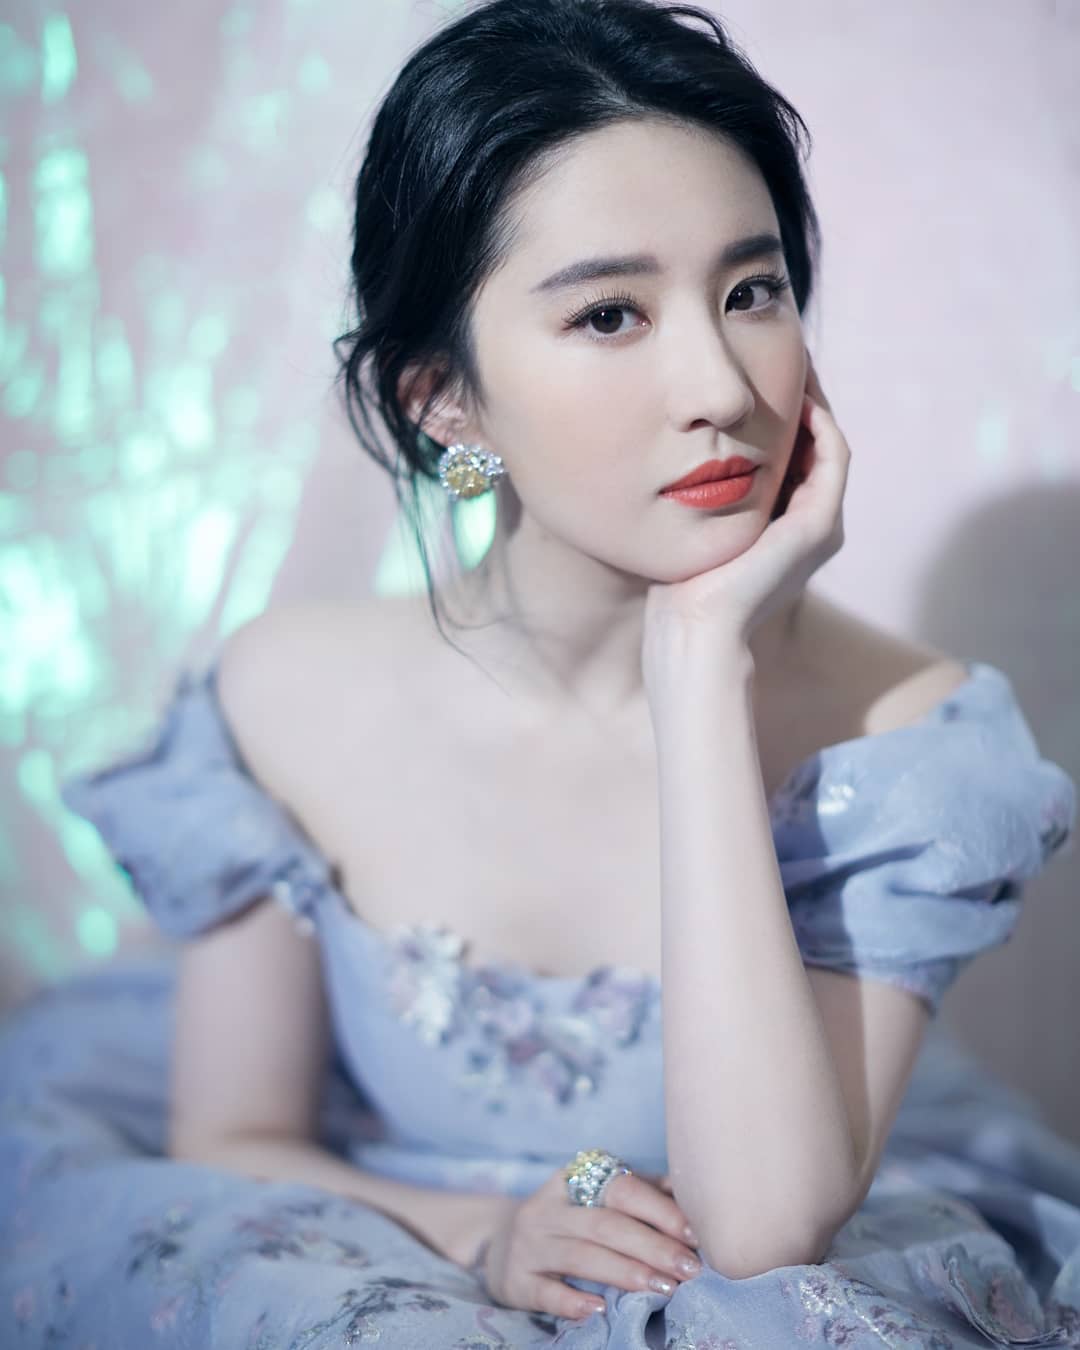 Lahir di Wuhan, ini 10 Pesona Liu Yifei Bintang Film Mulan